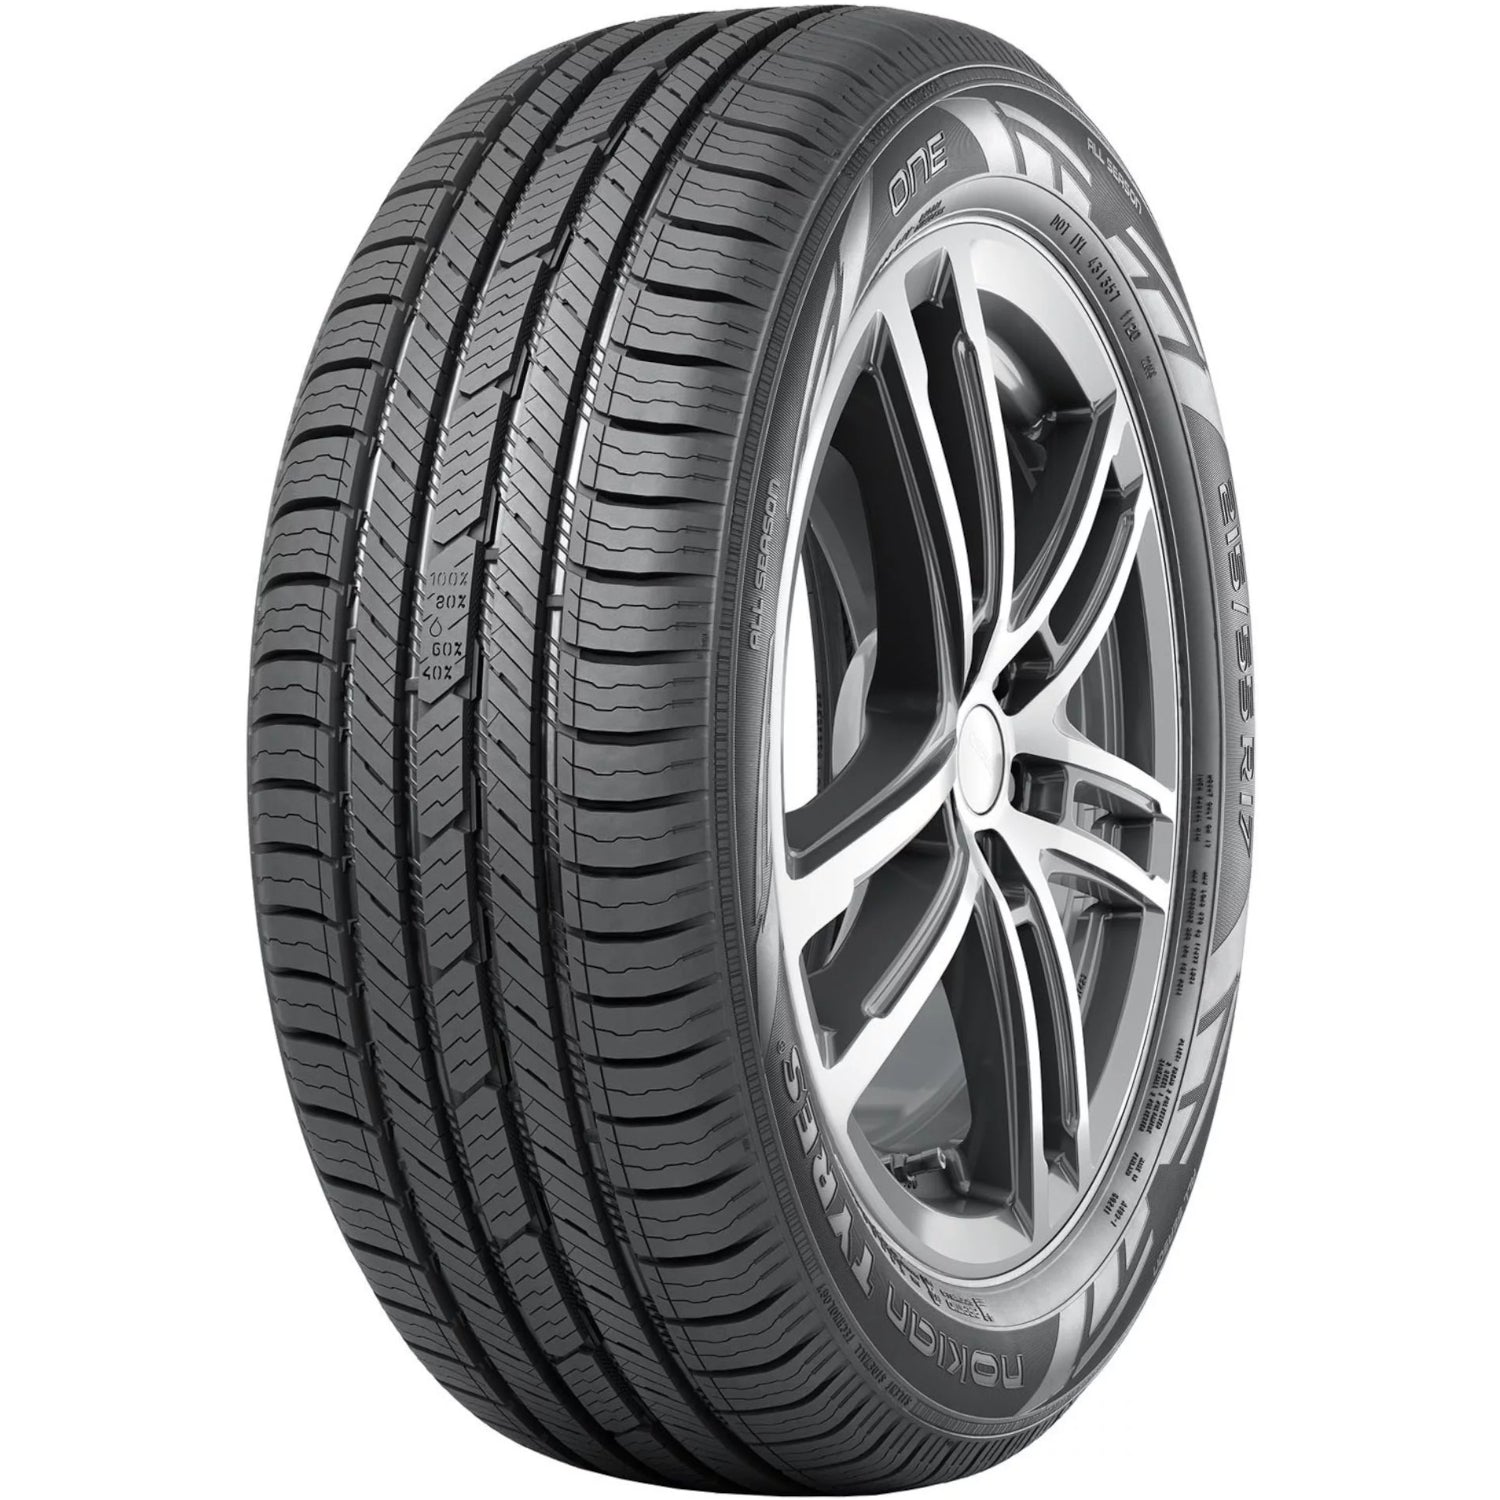 NOKIAN ONE 215/45R17XL (24.6X8.5R 17) Tires